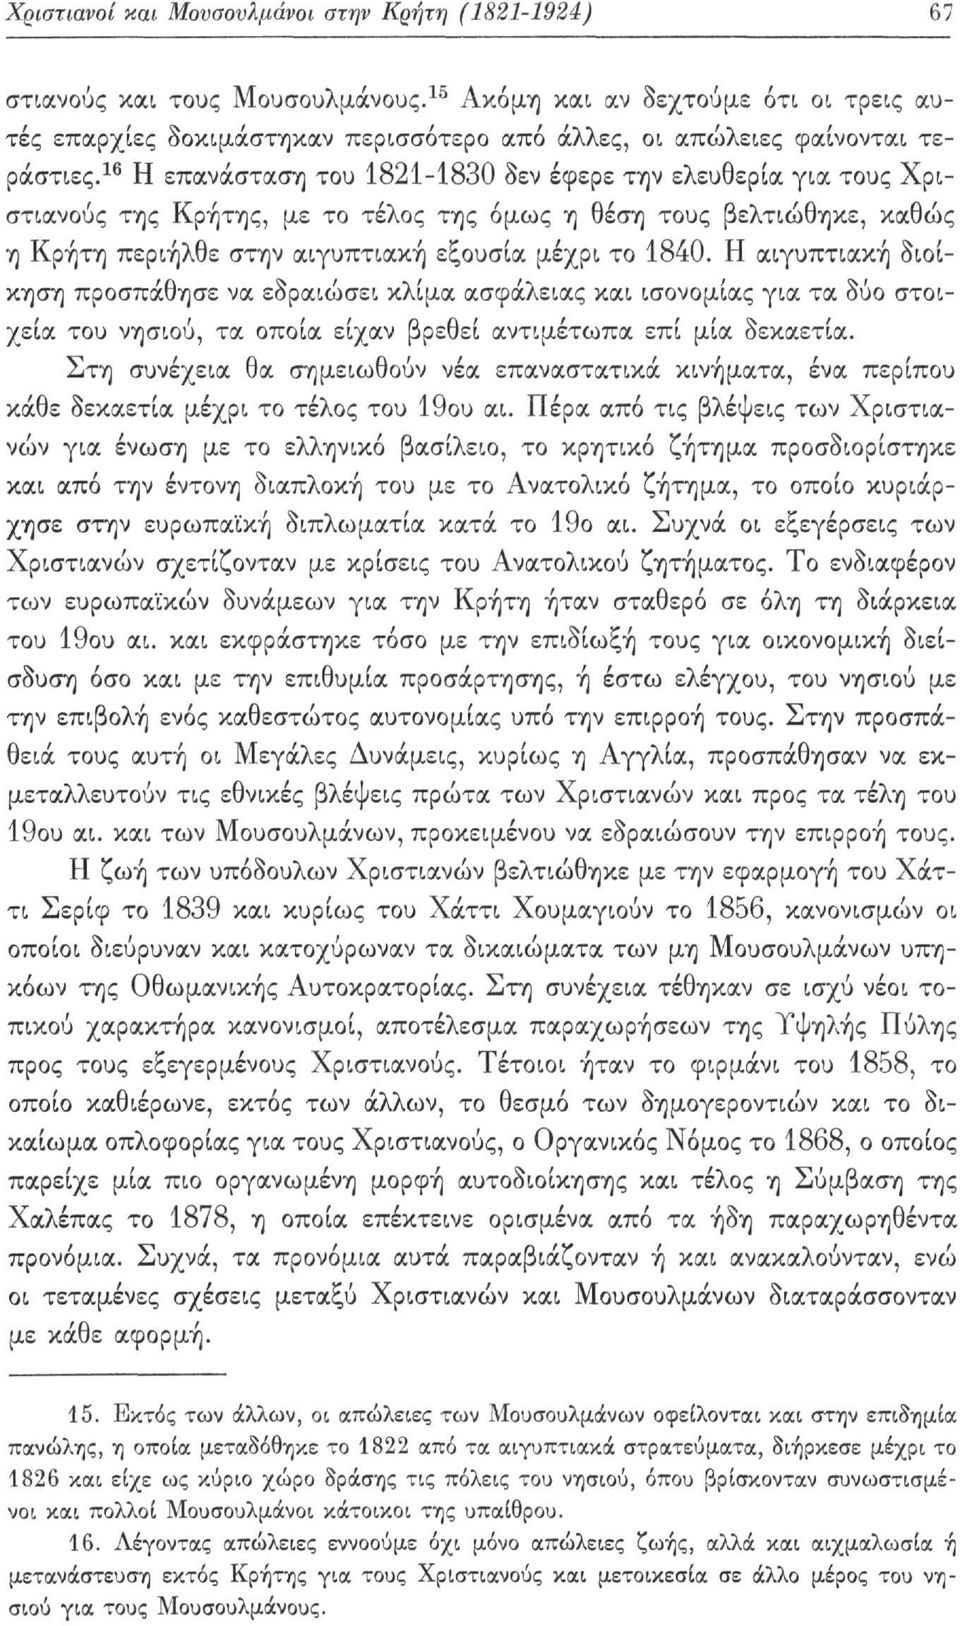 16 Η επανάσταση του 1821-1830 δεν έφερε την ελευθερία για τους Χριστιανούς της Κρήτης, με το τέλος της όμως η θέση τους βελτιώθηκε, καθώς η Κρήτη περιήλθε στην αιγυπτιακή εξουσία μέχρι το 1840.